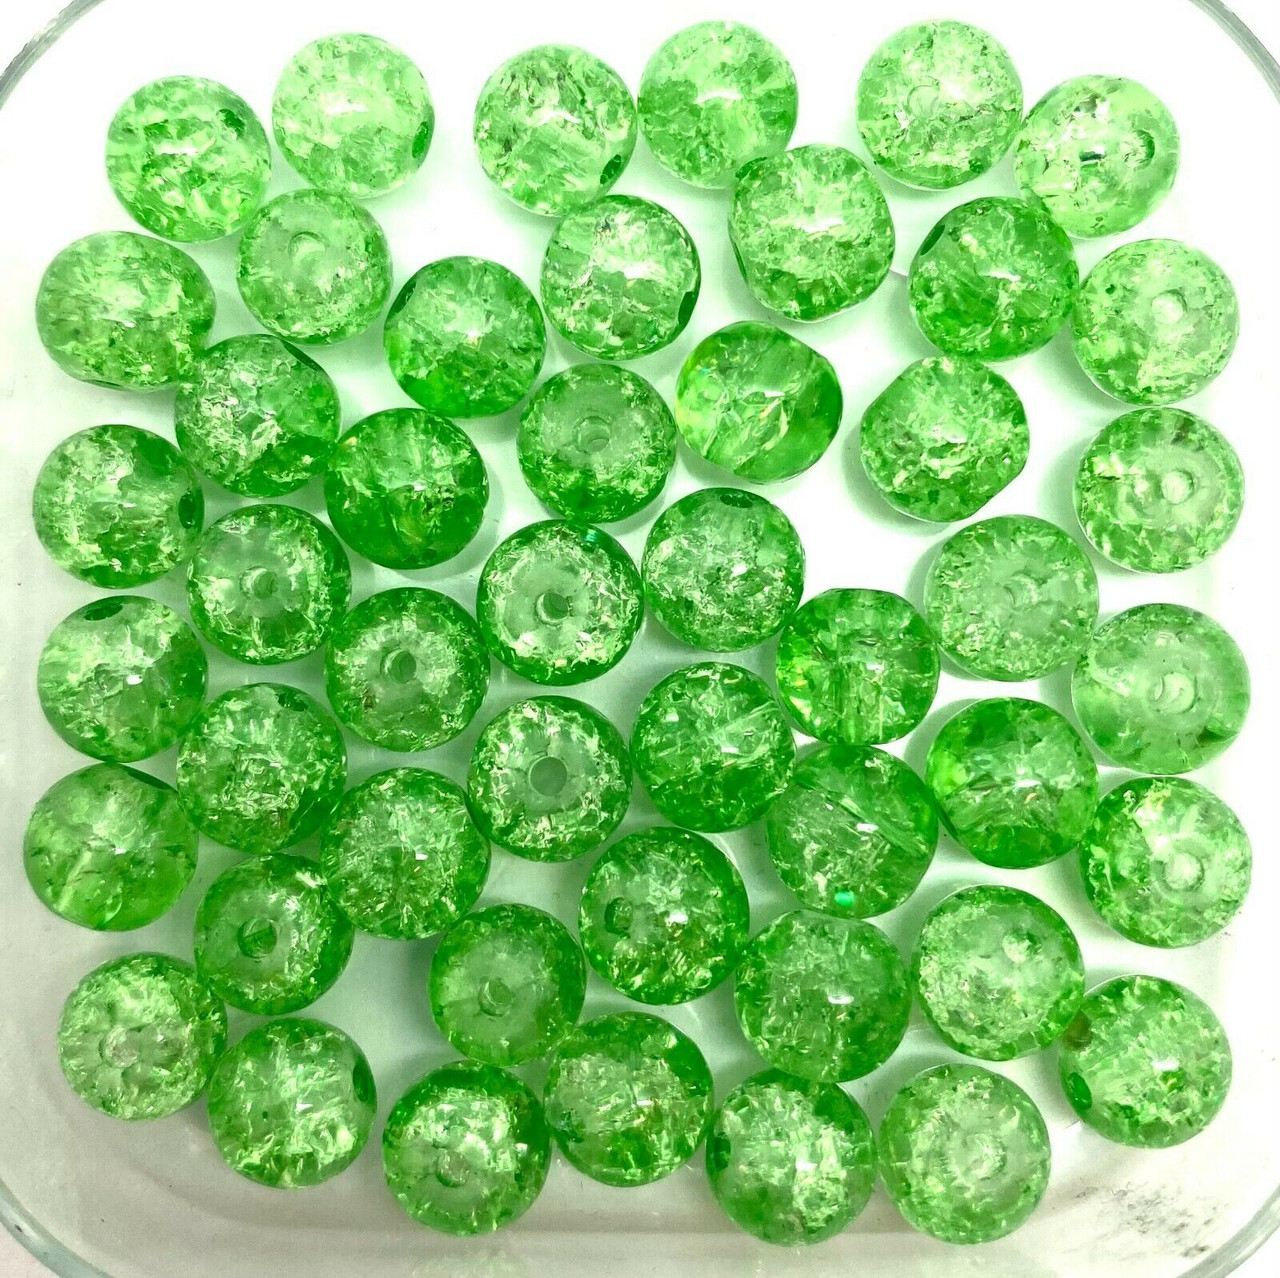 10mm Crackle Glass Beads - Grass Green, 40 beads